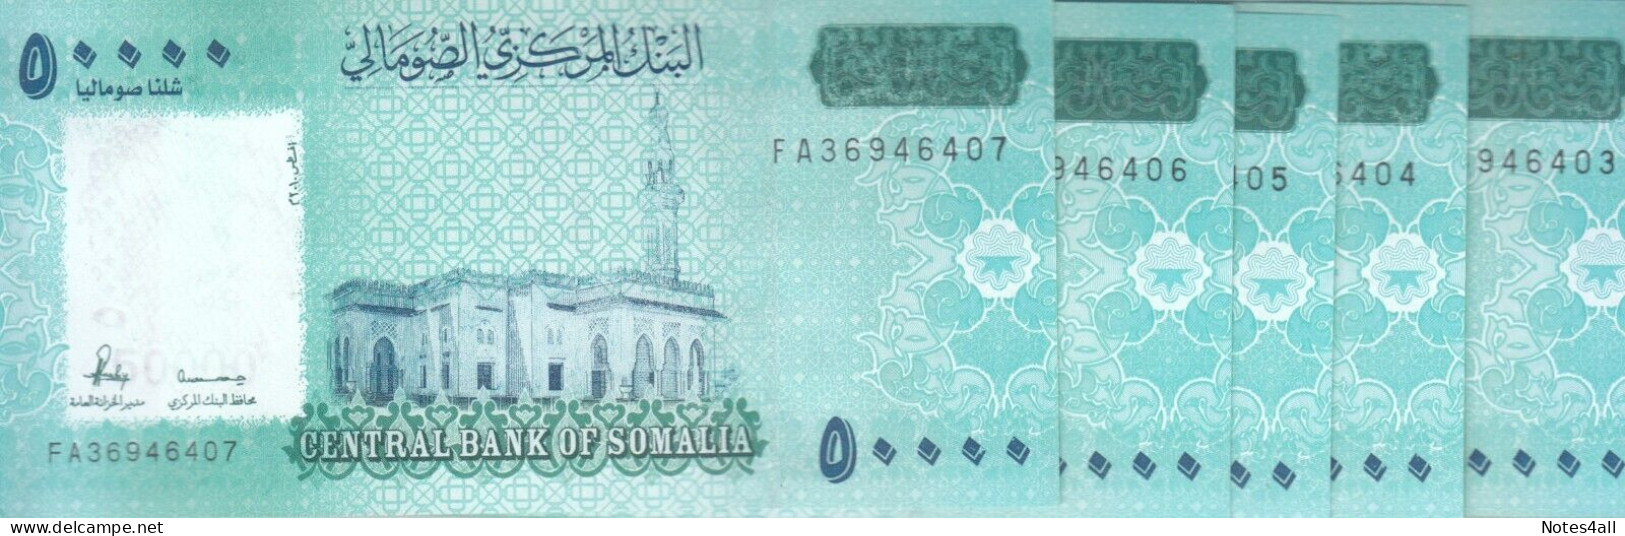 Somalia 50000 50.000 Shillings Shillin 2010 2023 P-43 LOT X5 UNC NOTES - Somalia